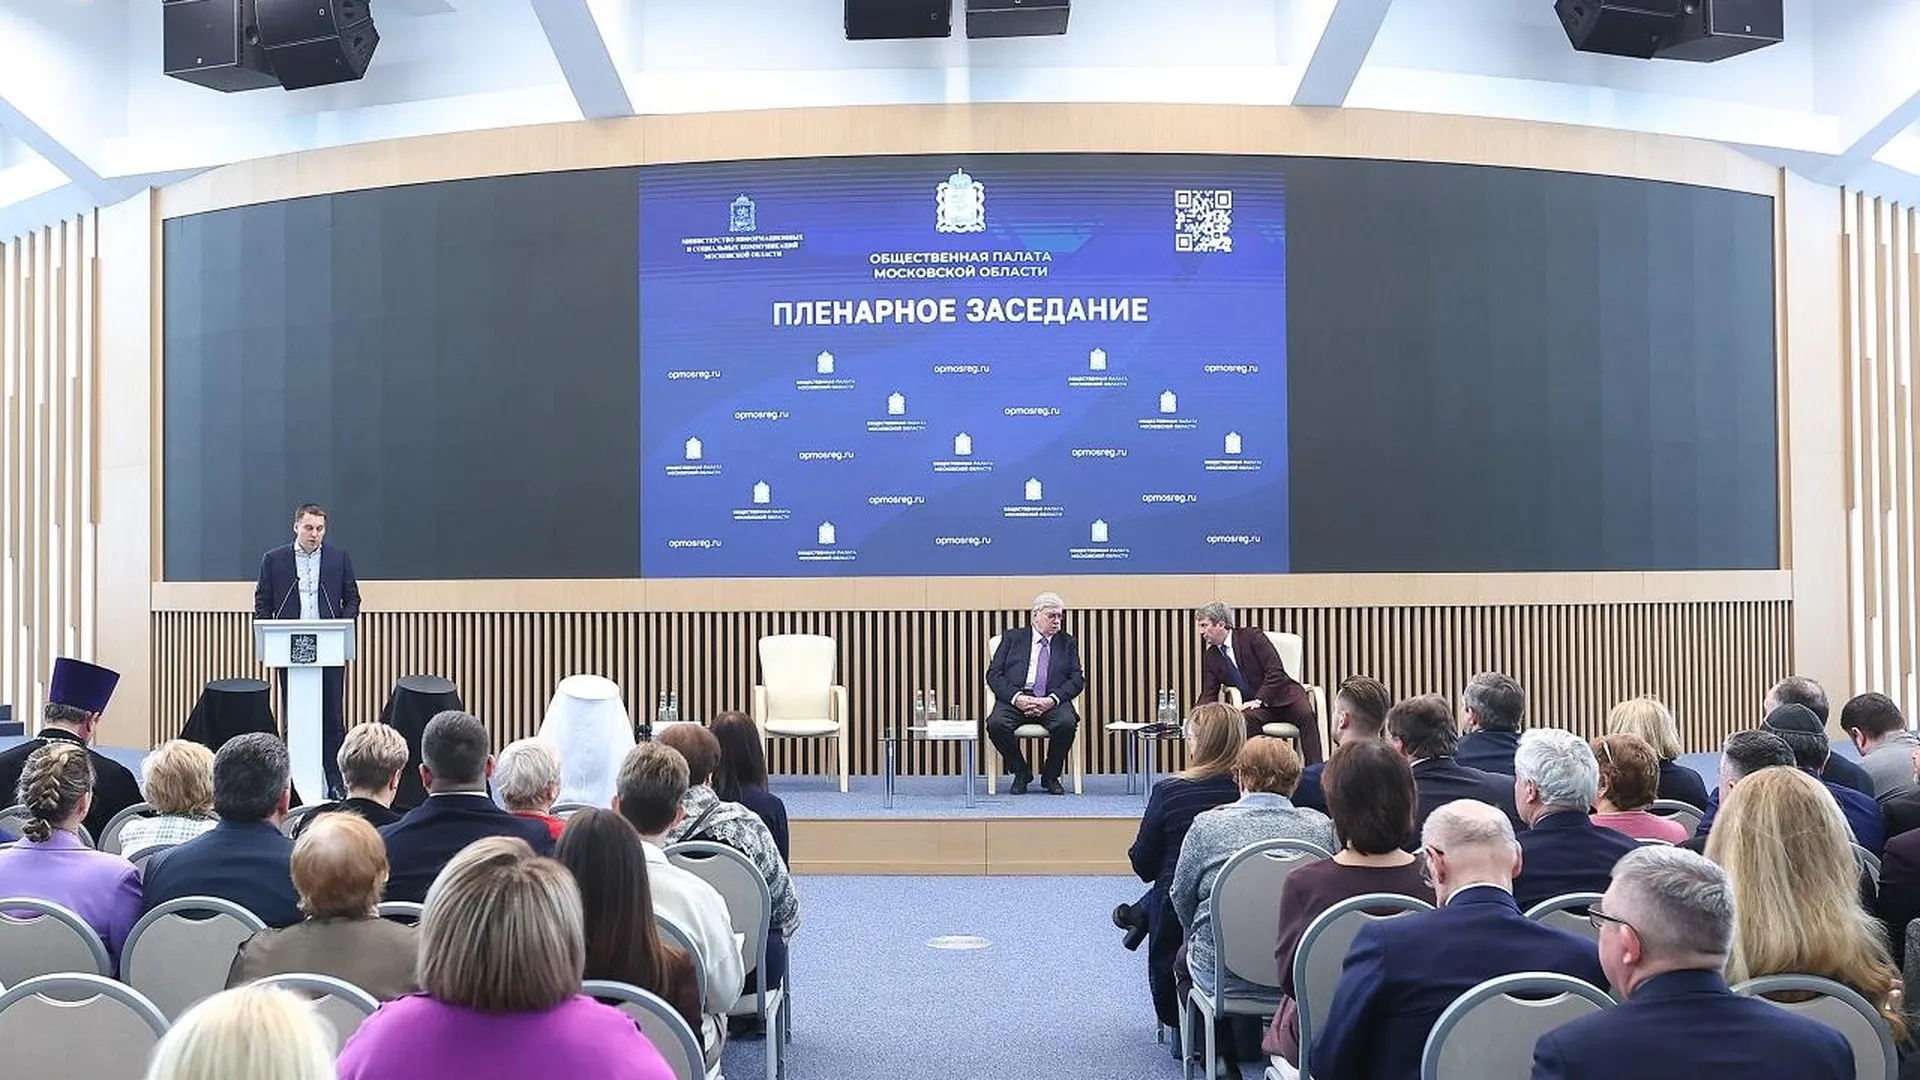 Работу наблюдателей на выборах президента обсудили на пленарном заседании Общественной палаты Подмосковья